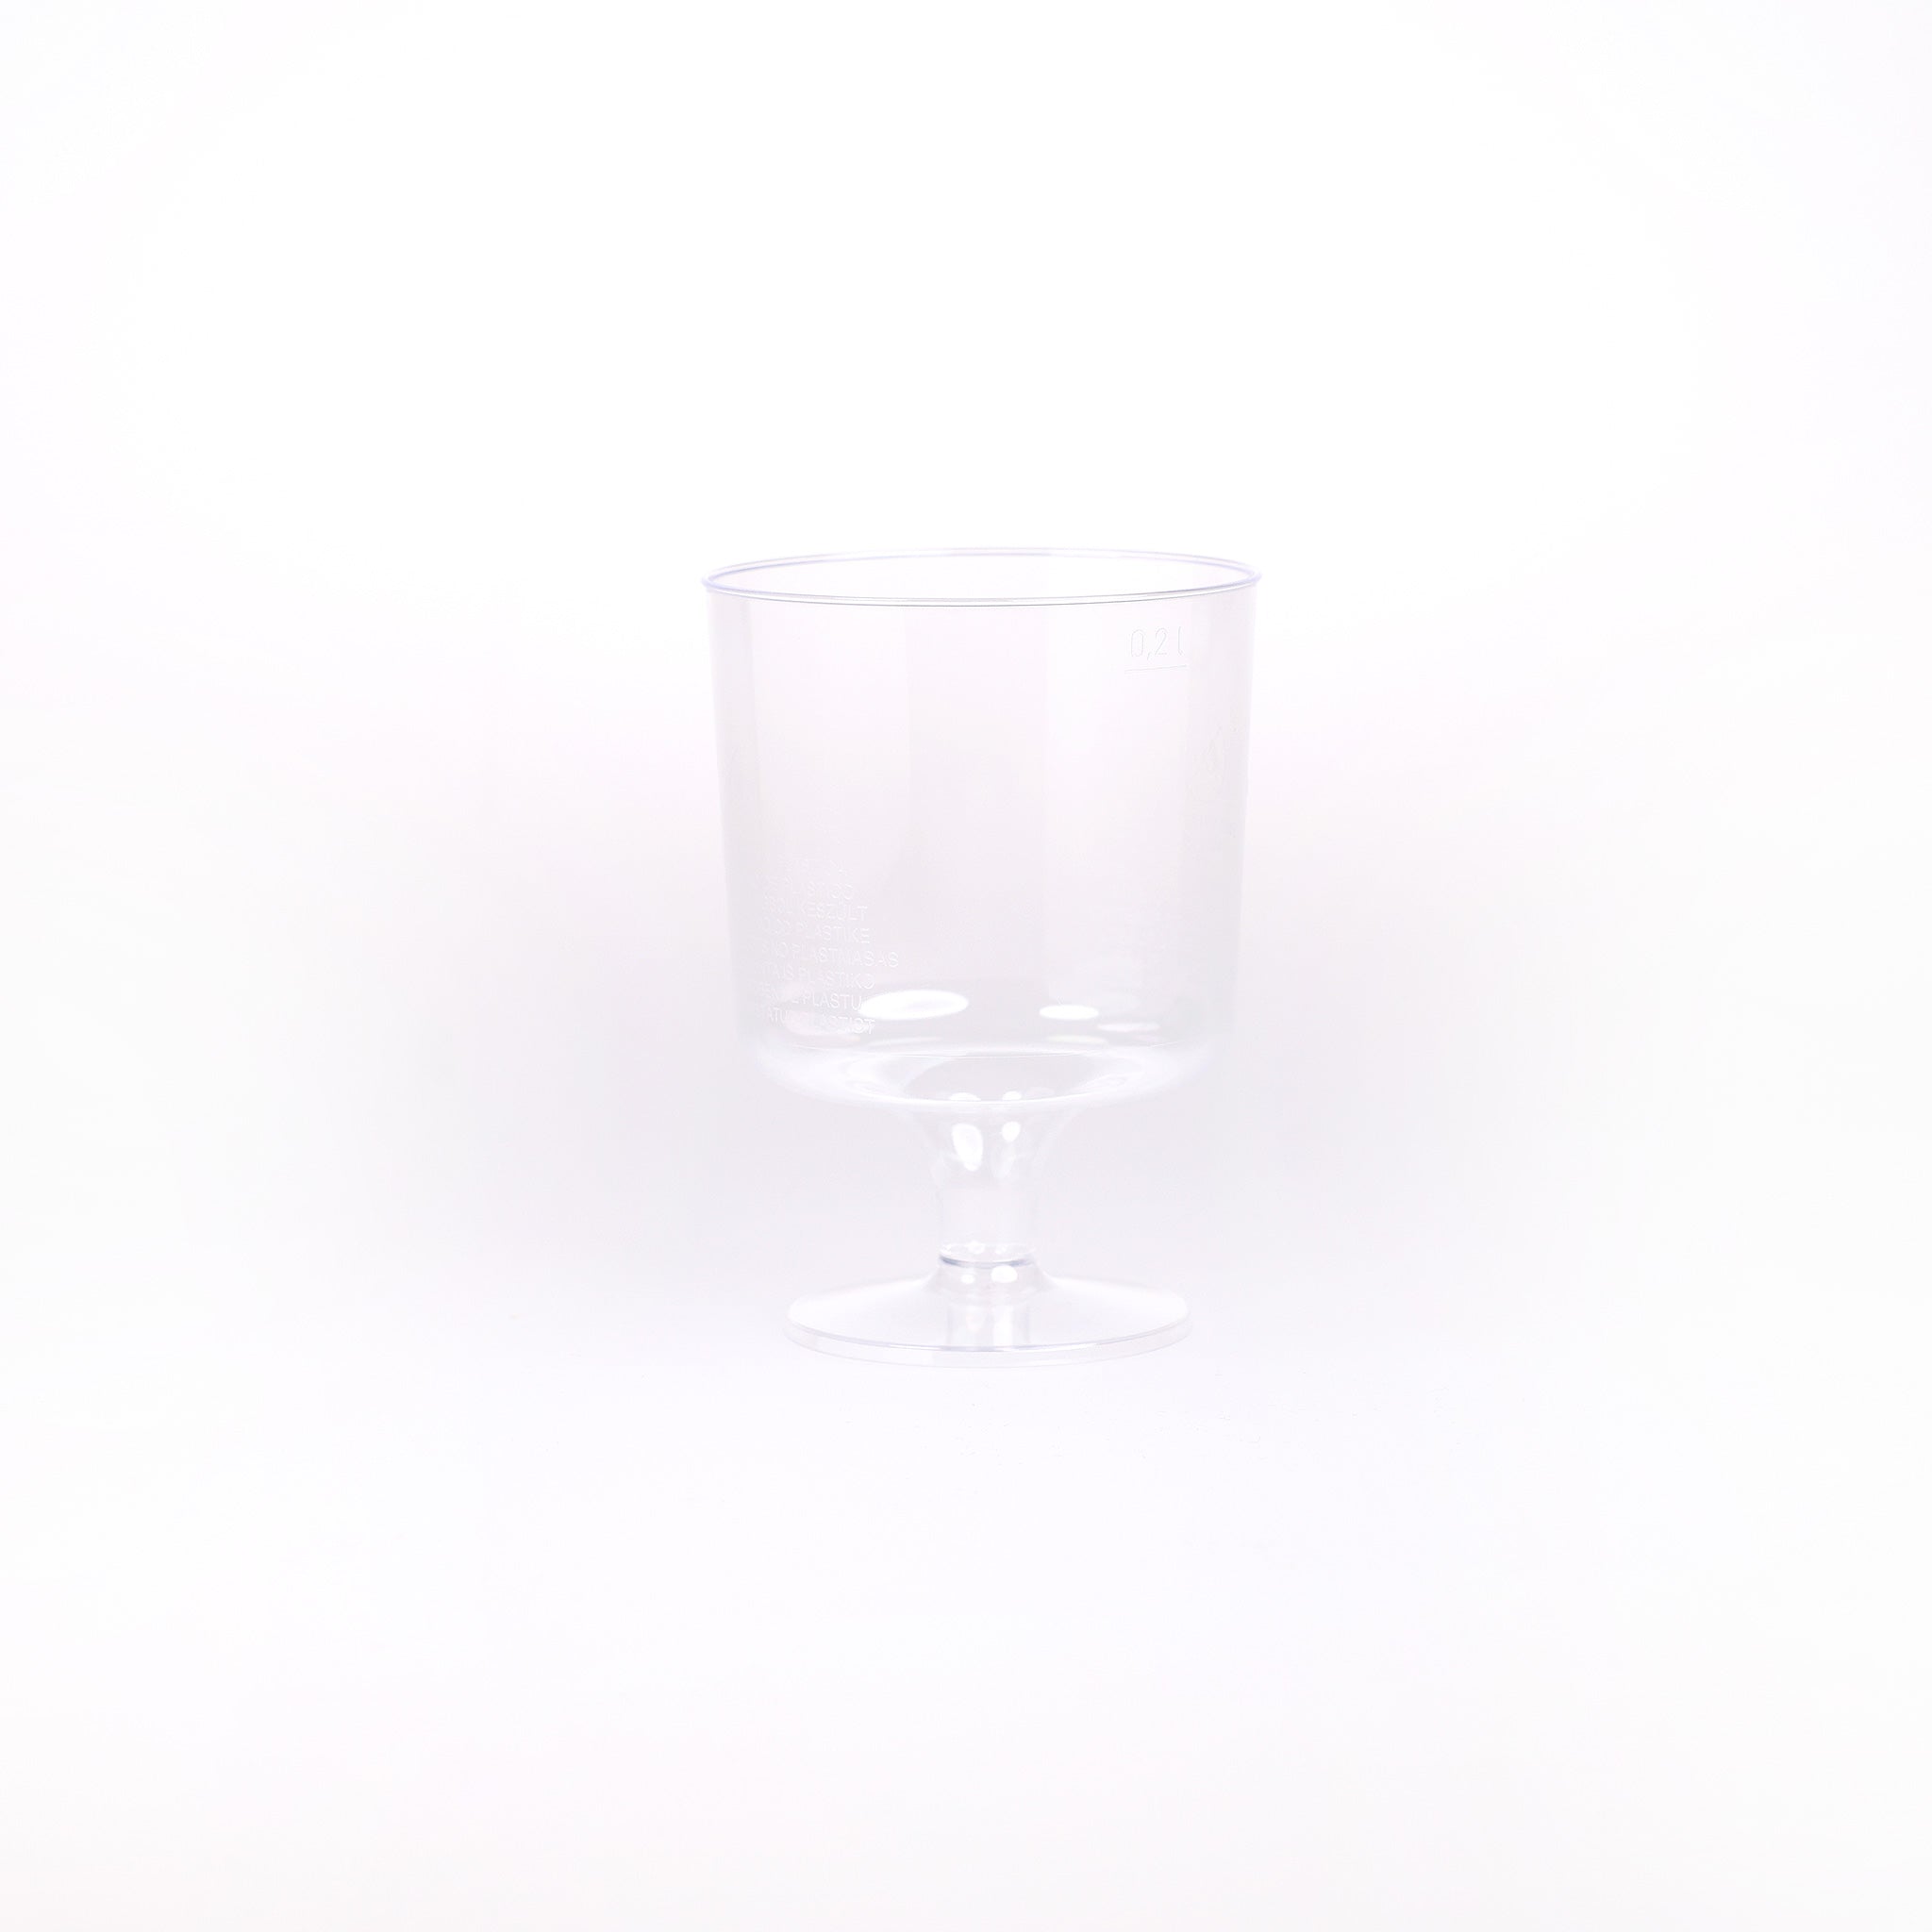 Vinglas på fod. Disse praktiske vinglas i plast kan indeholde 20 cl. Plastglassene er til engangsbrug og på fast fod.